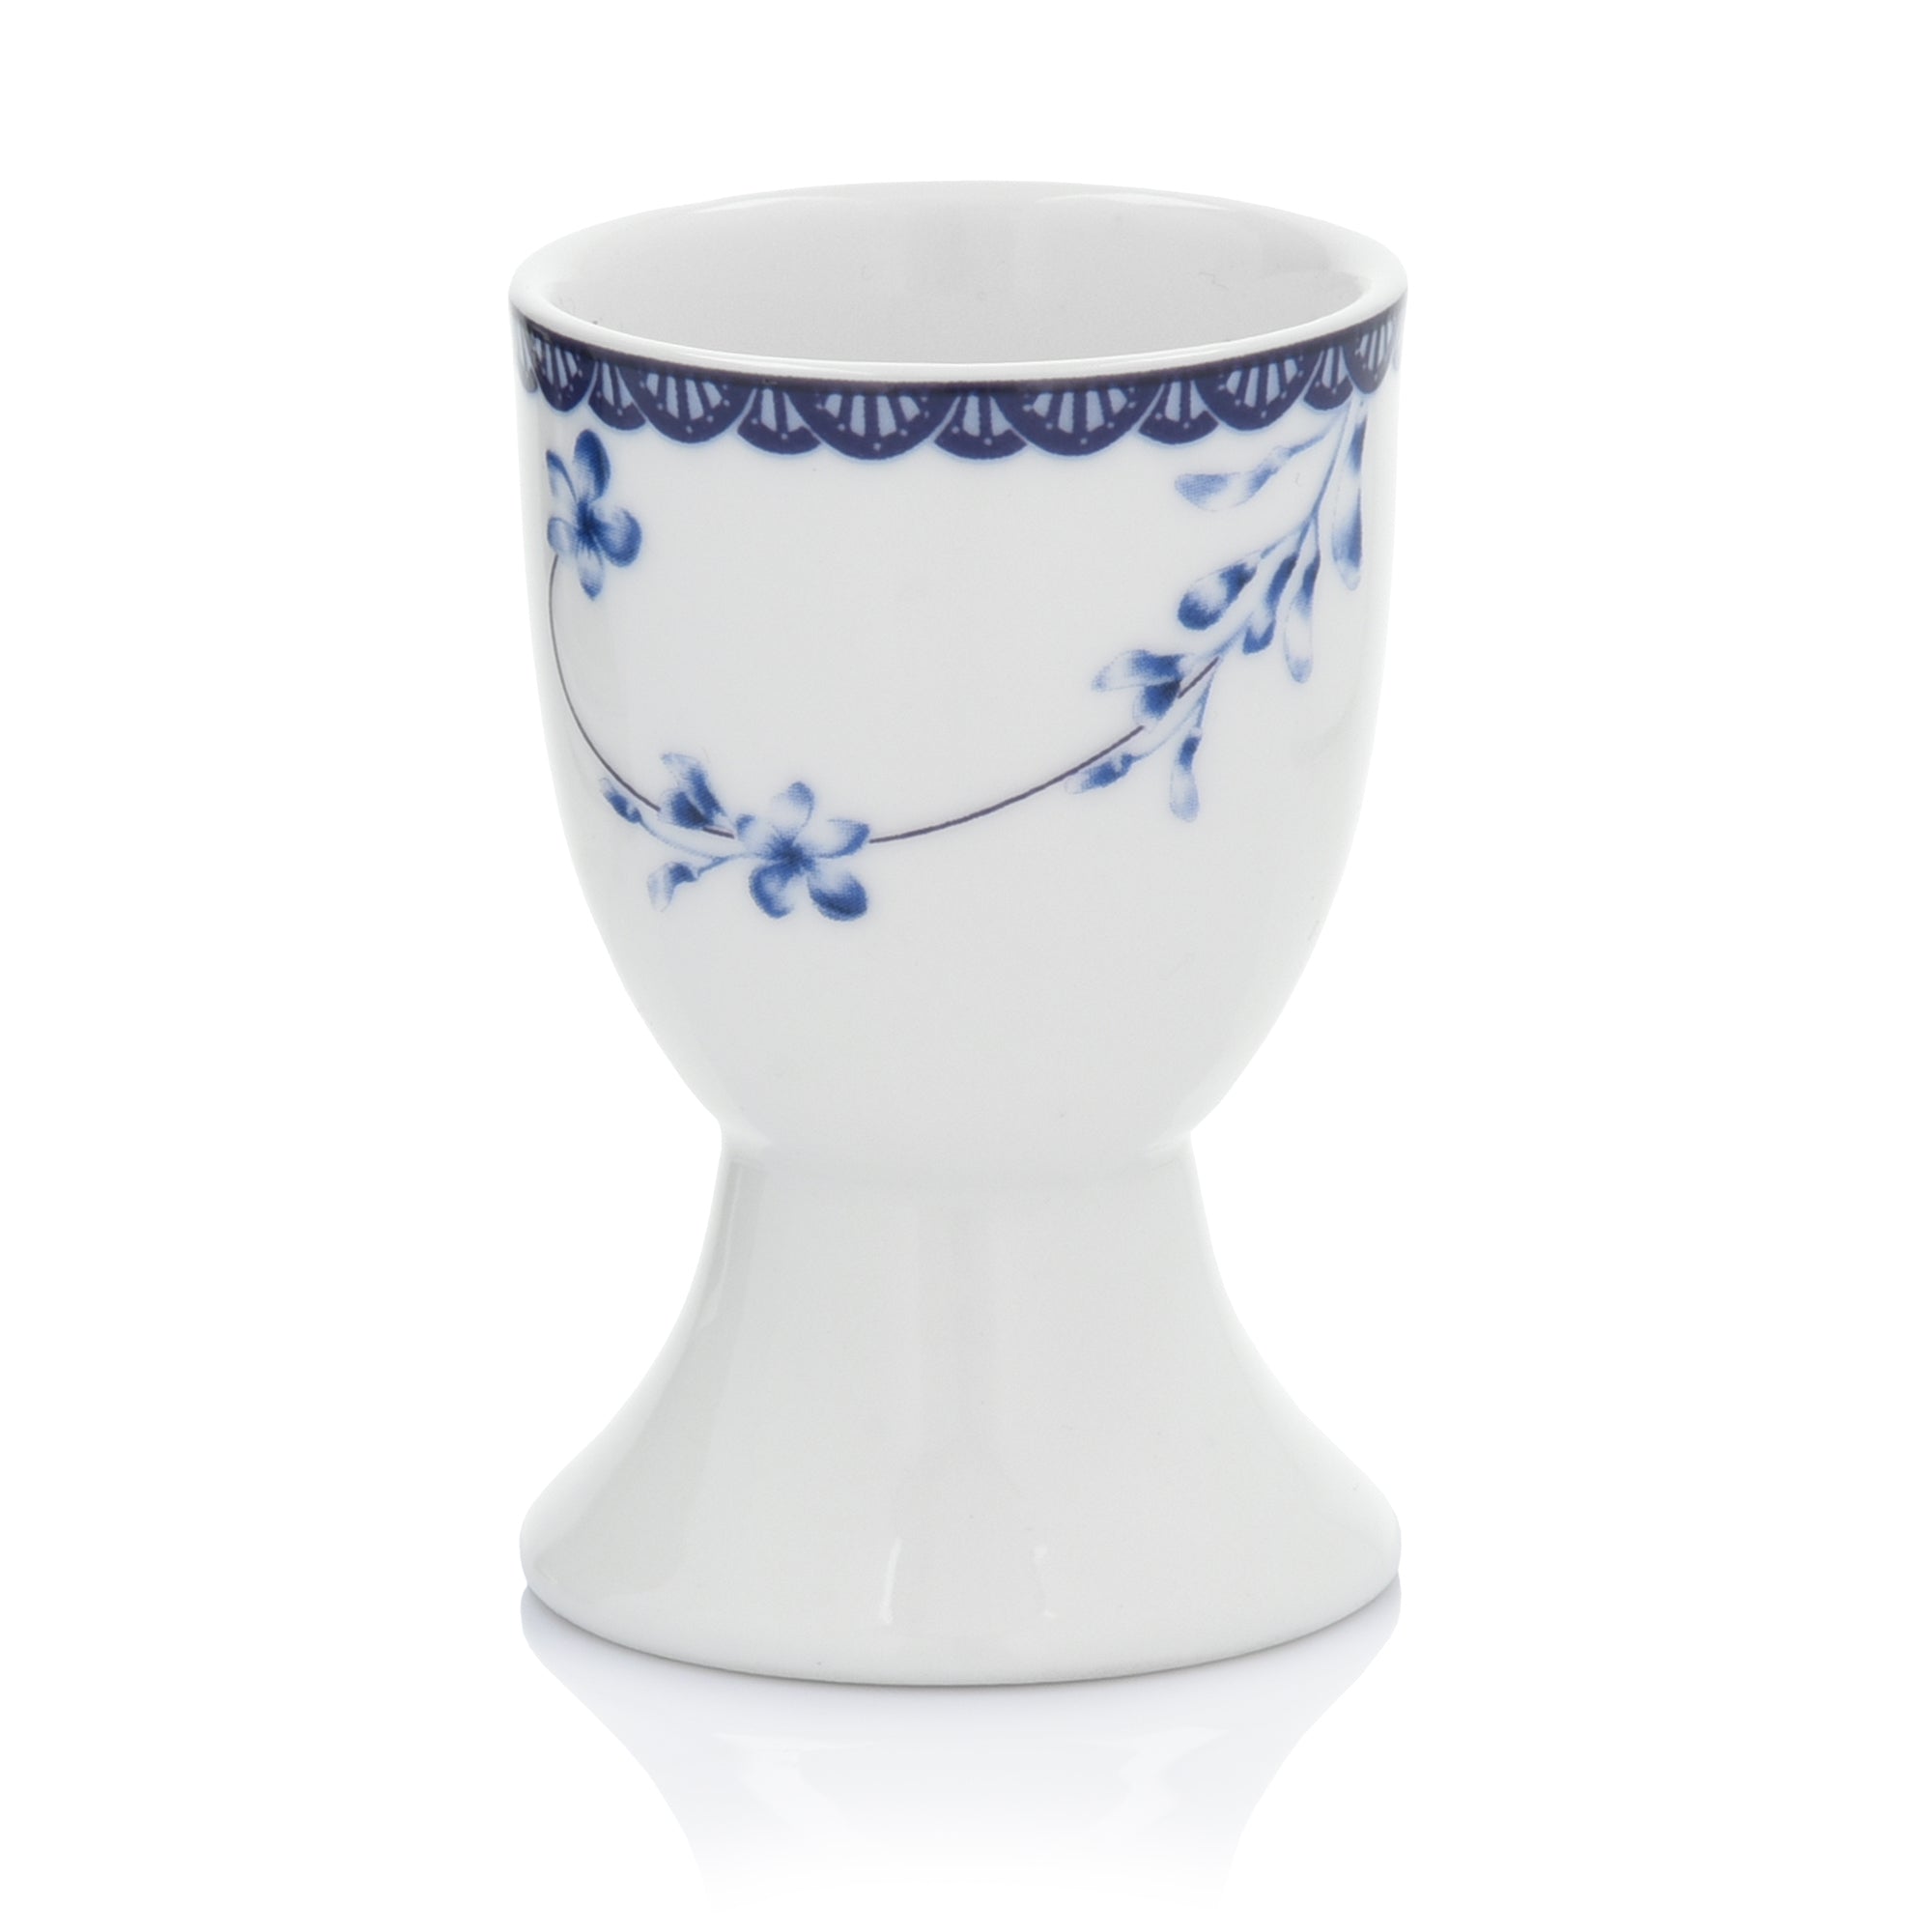 Floral Design Egg Cup